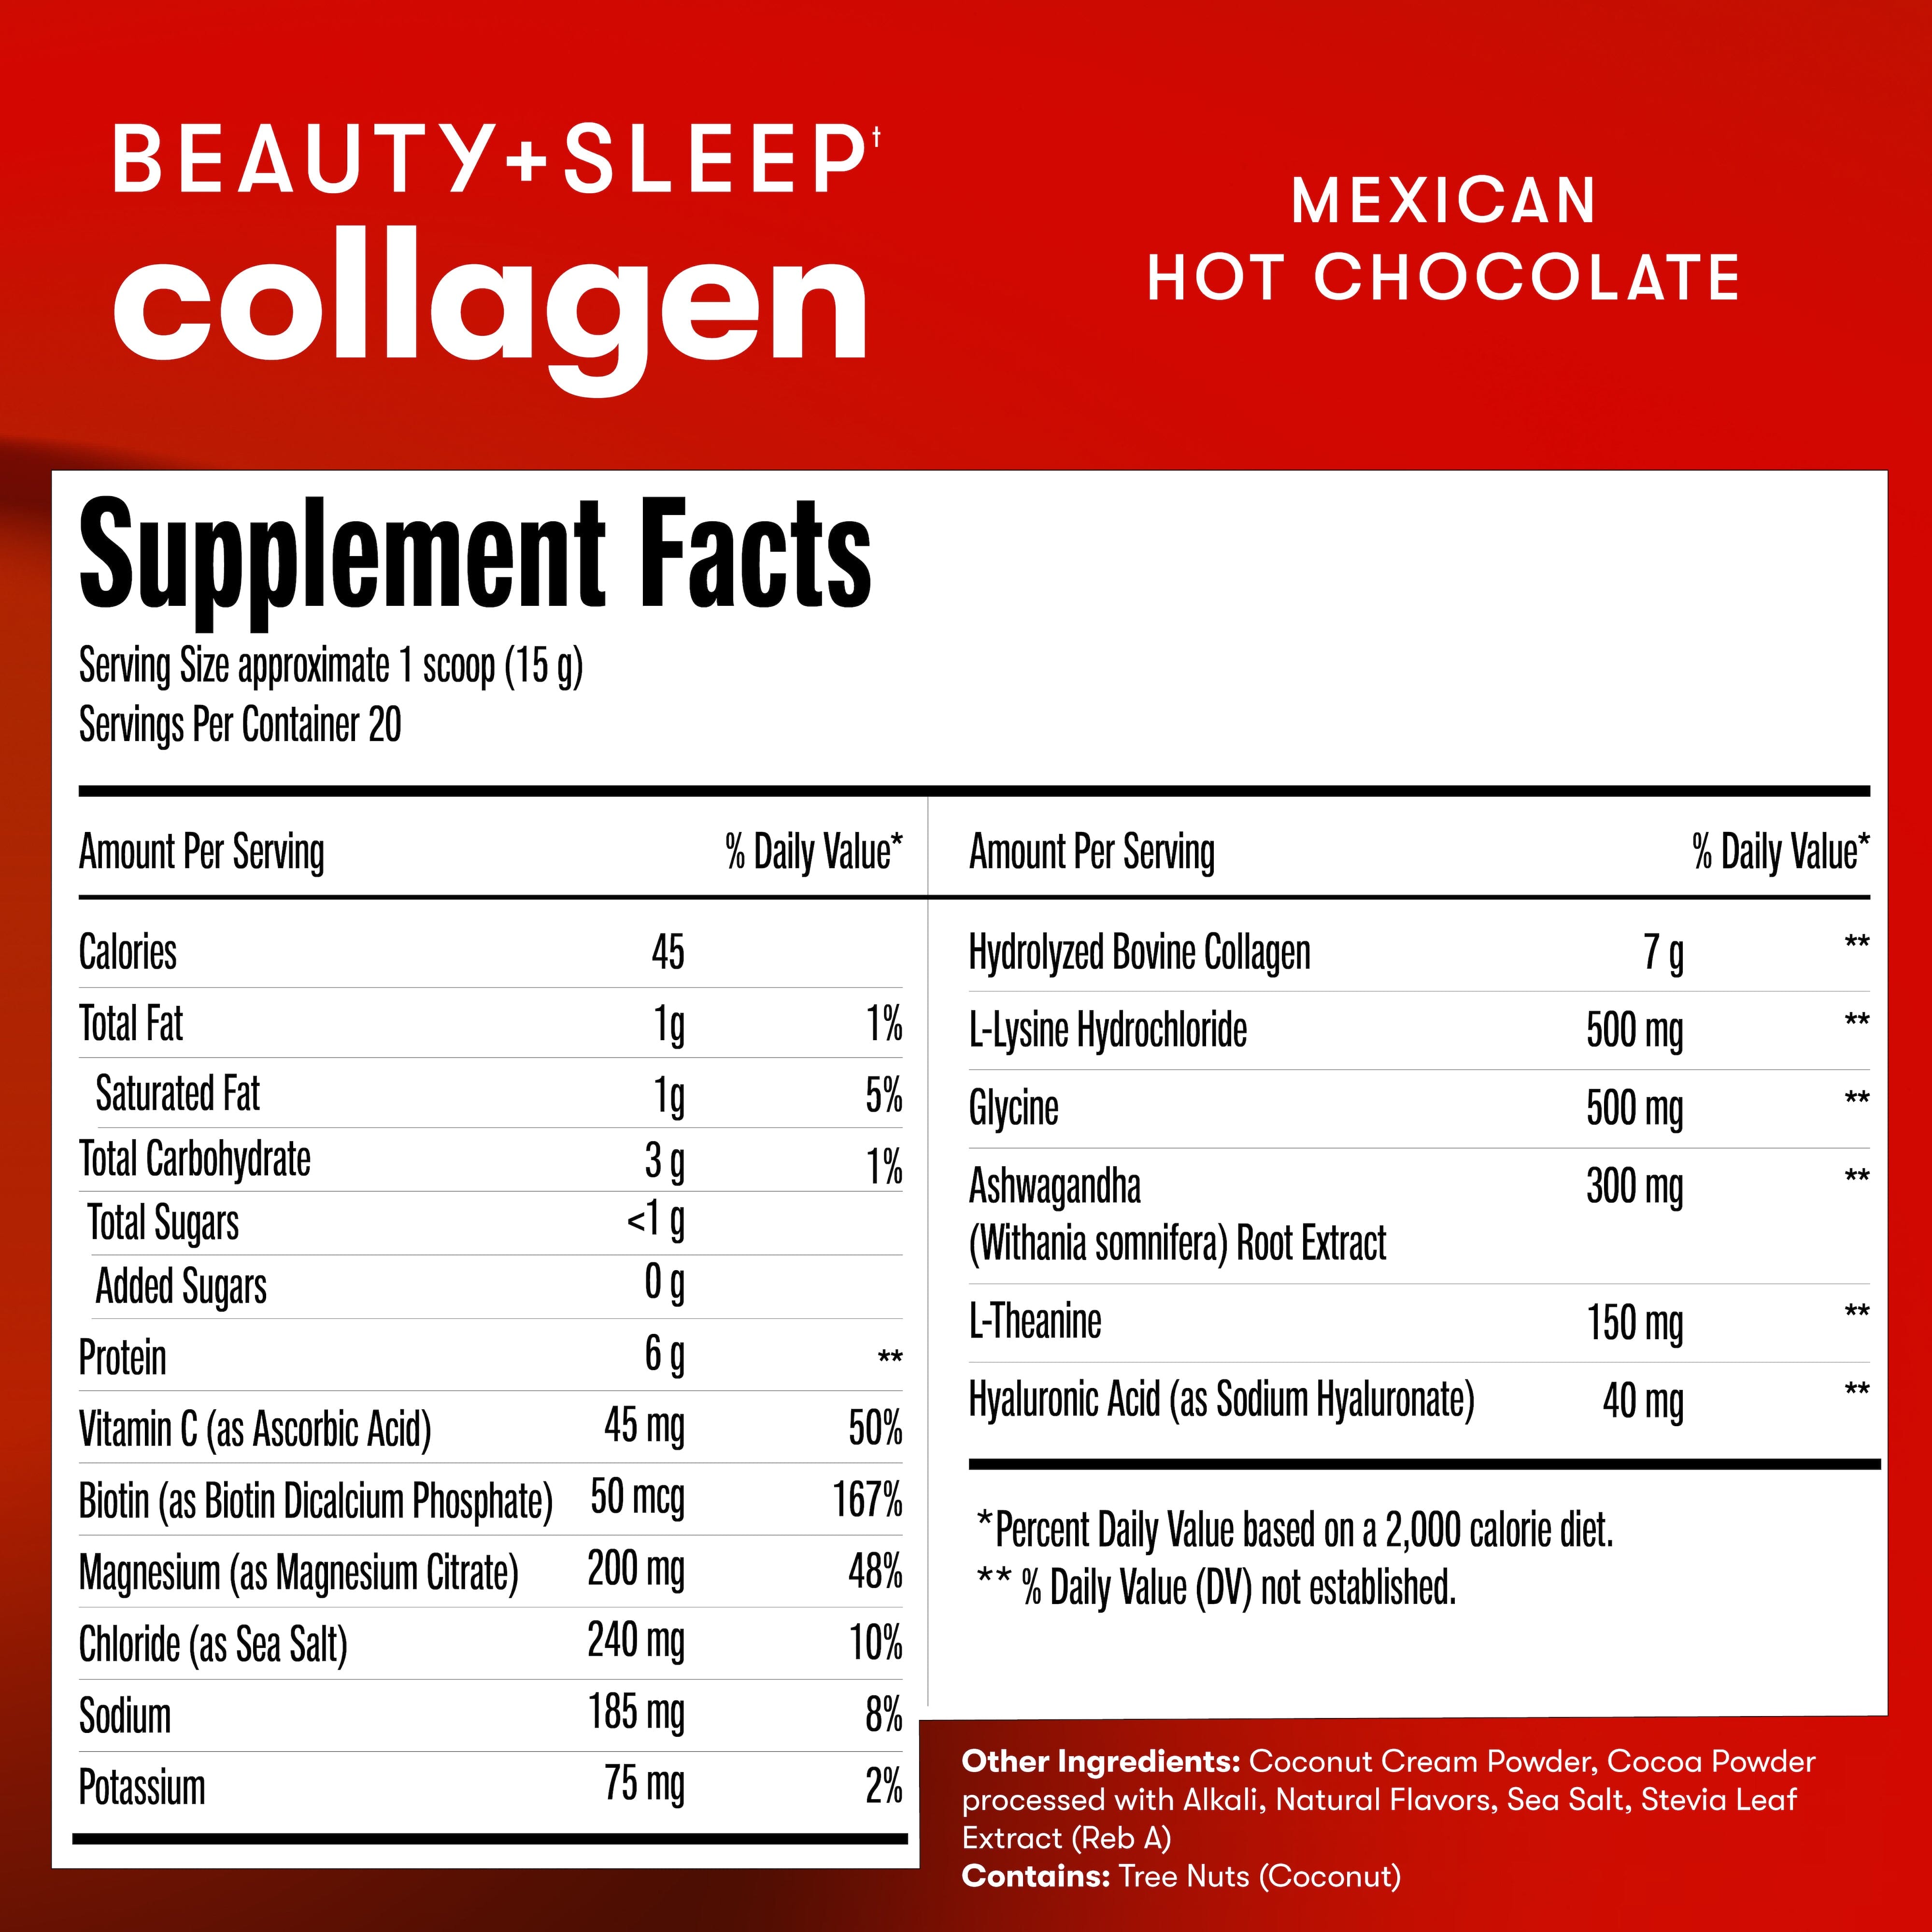 Beauty + Sleep Collagen.